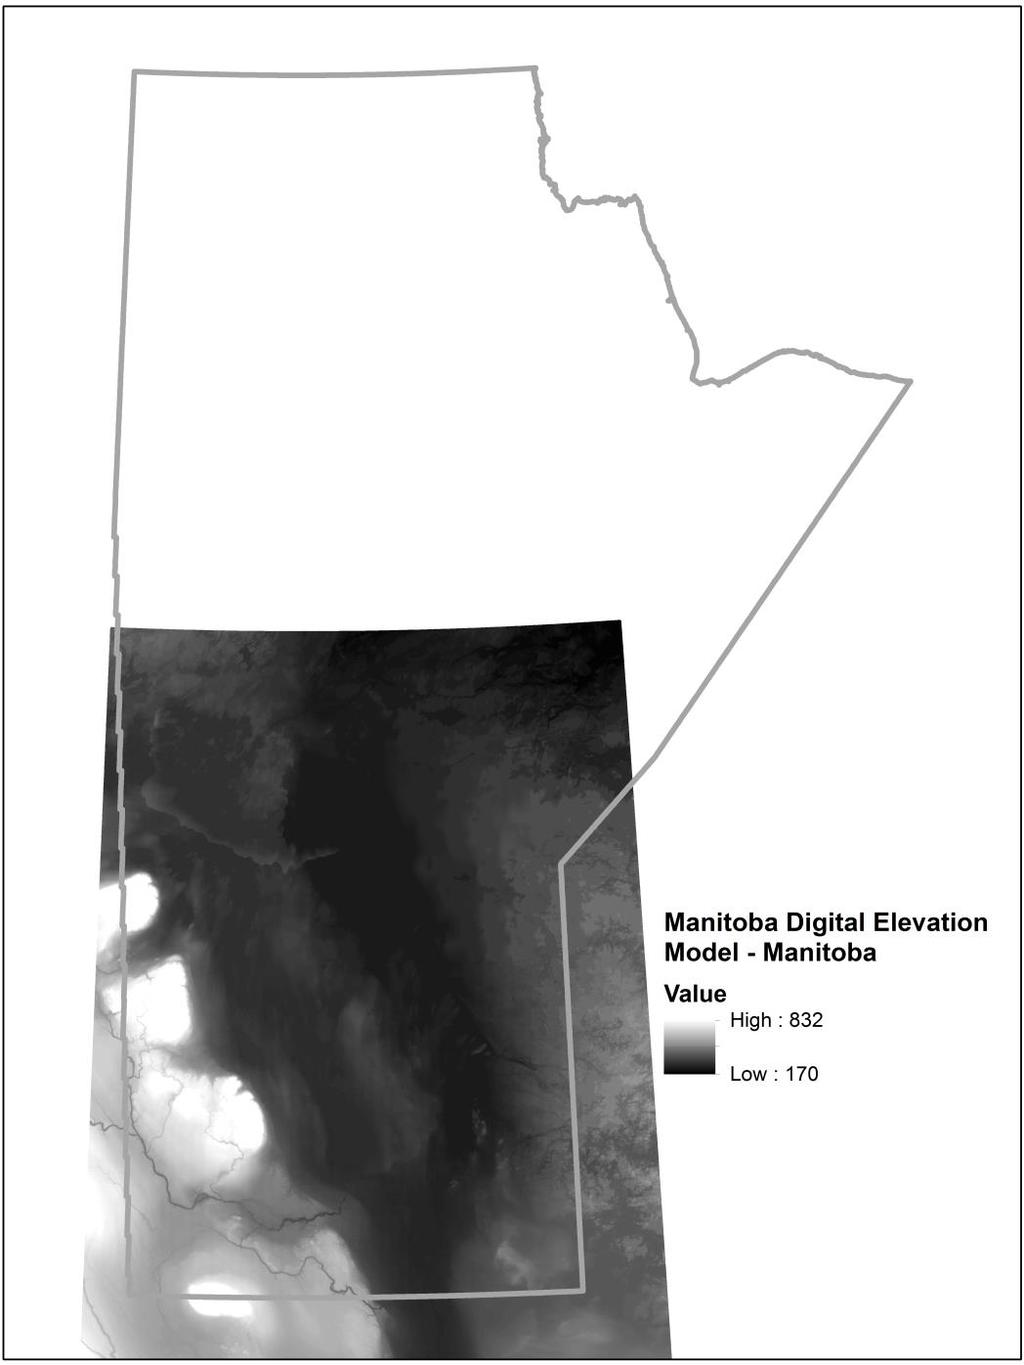 Current Digital Elevation Model Datasets Southern Manitoba 100m DEM Published 2002 Derived from 2m